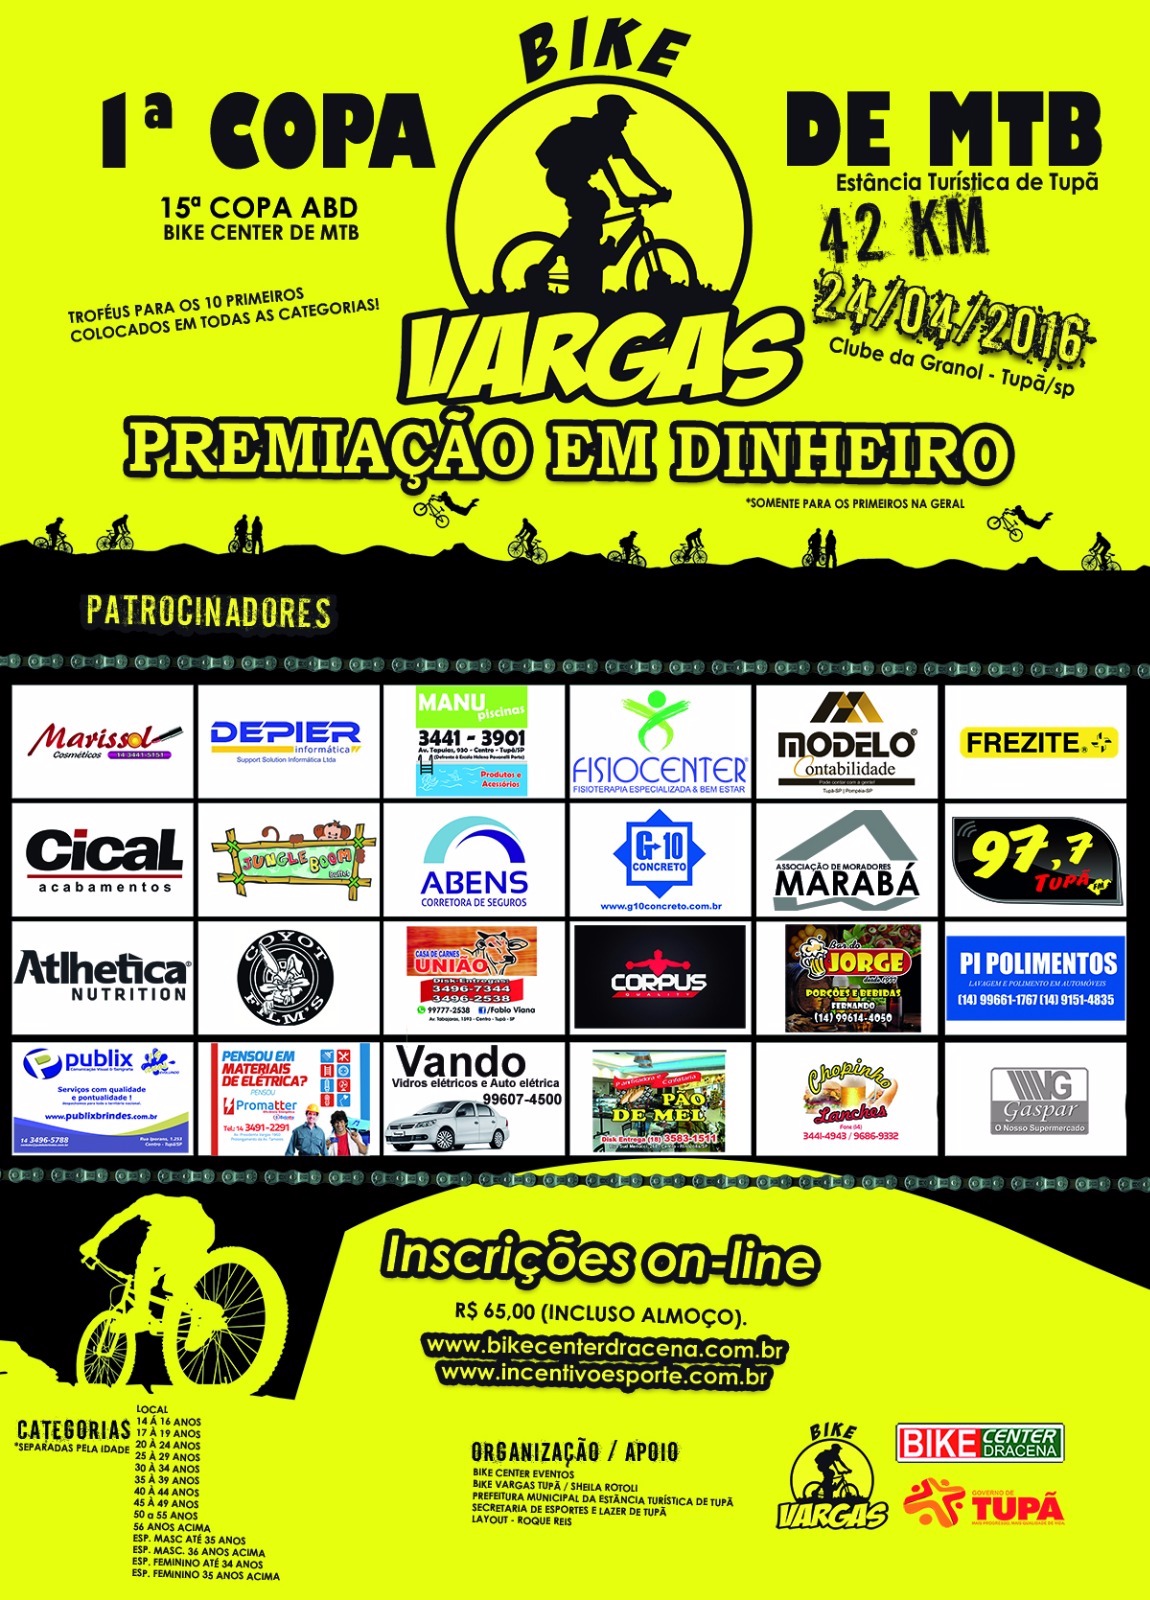 1º Copa Bike Vargas de MTB - Tupã/SP1º Copa Bike Vargas de MTB - Tupã/SP